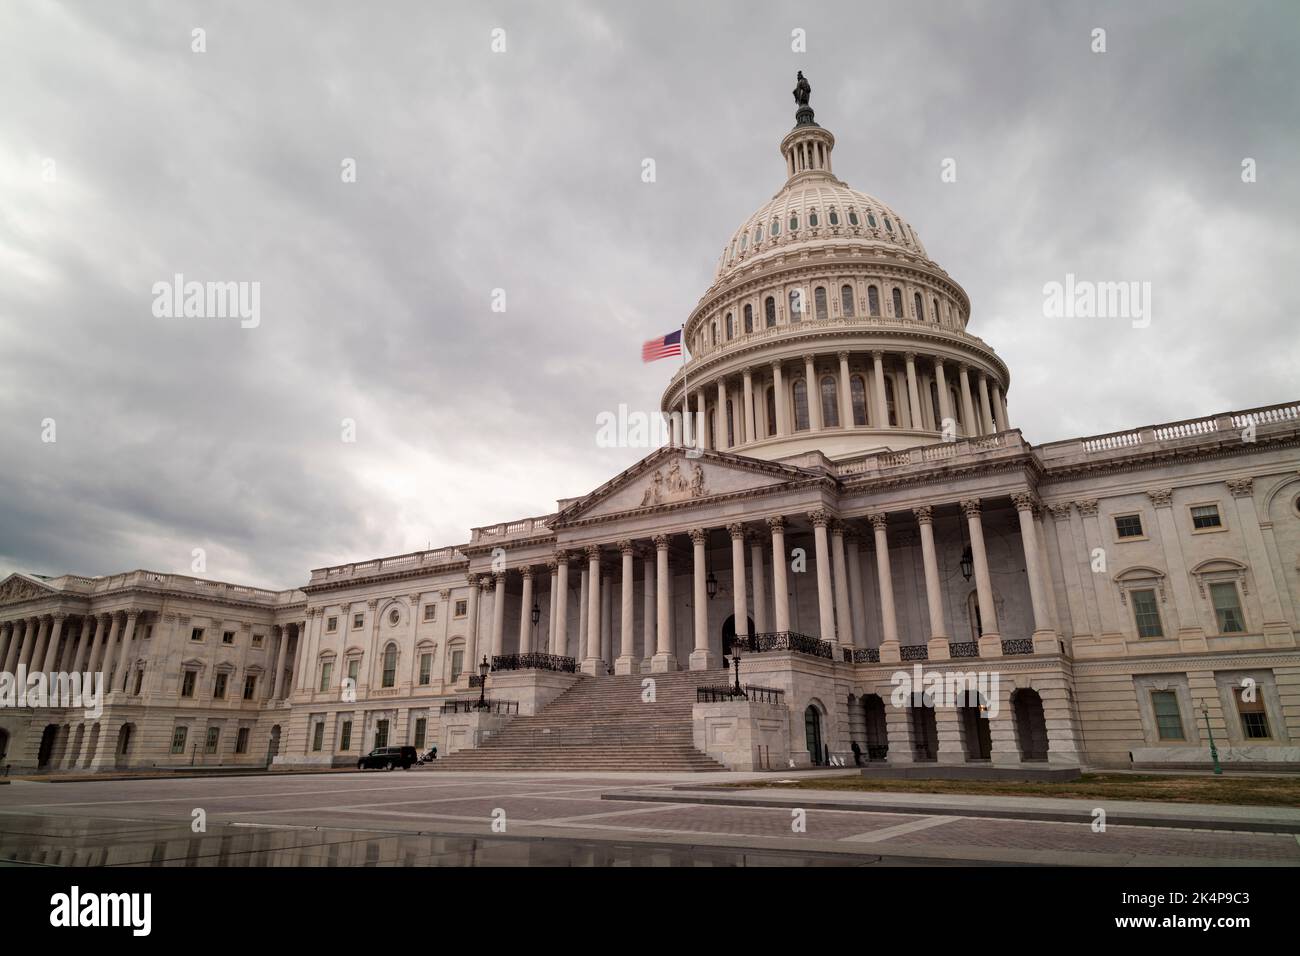 El lado este del edificio del Capitolio de los Estados Unidos en Washington, D.C., visto en una tarde de invierno. El cielo está lleno de nubes grises. Ninguna gente. Foto de stock